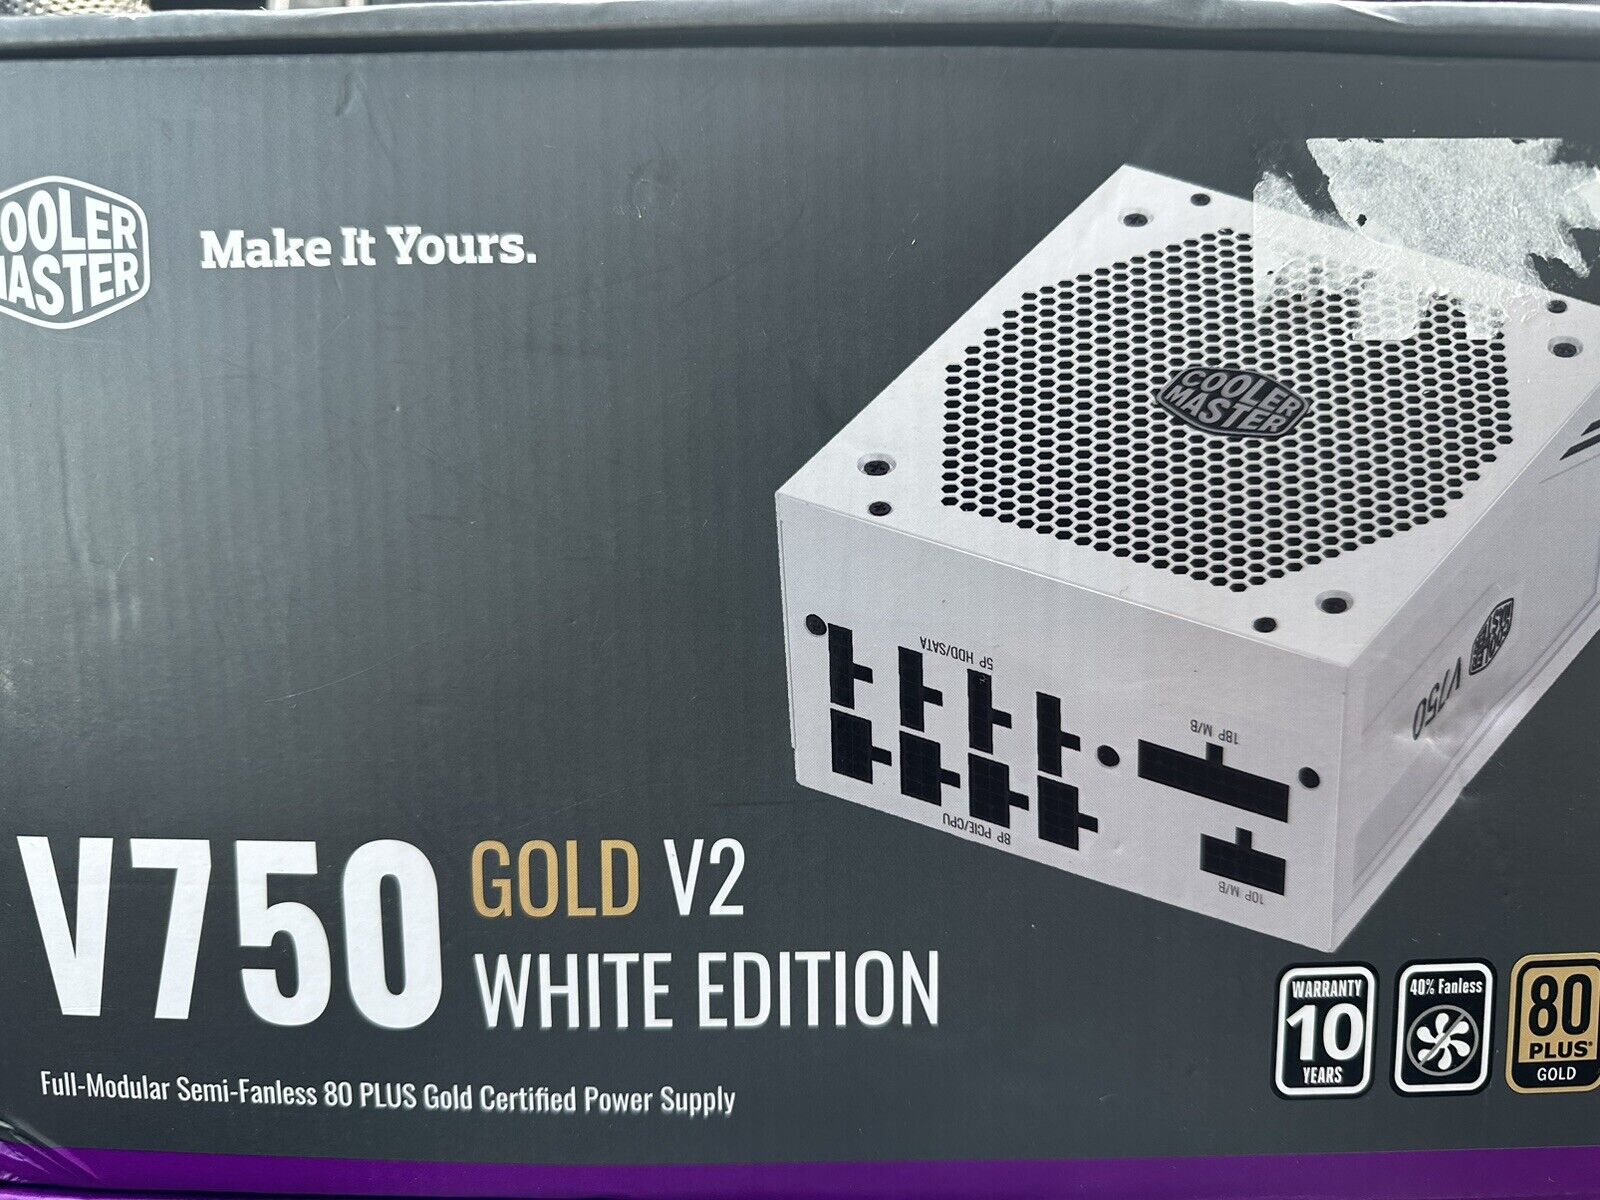 Coolermaster V750 Gold V2 White Edition